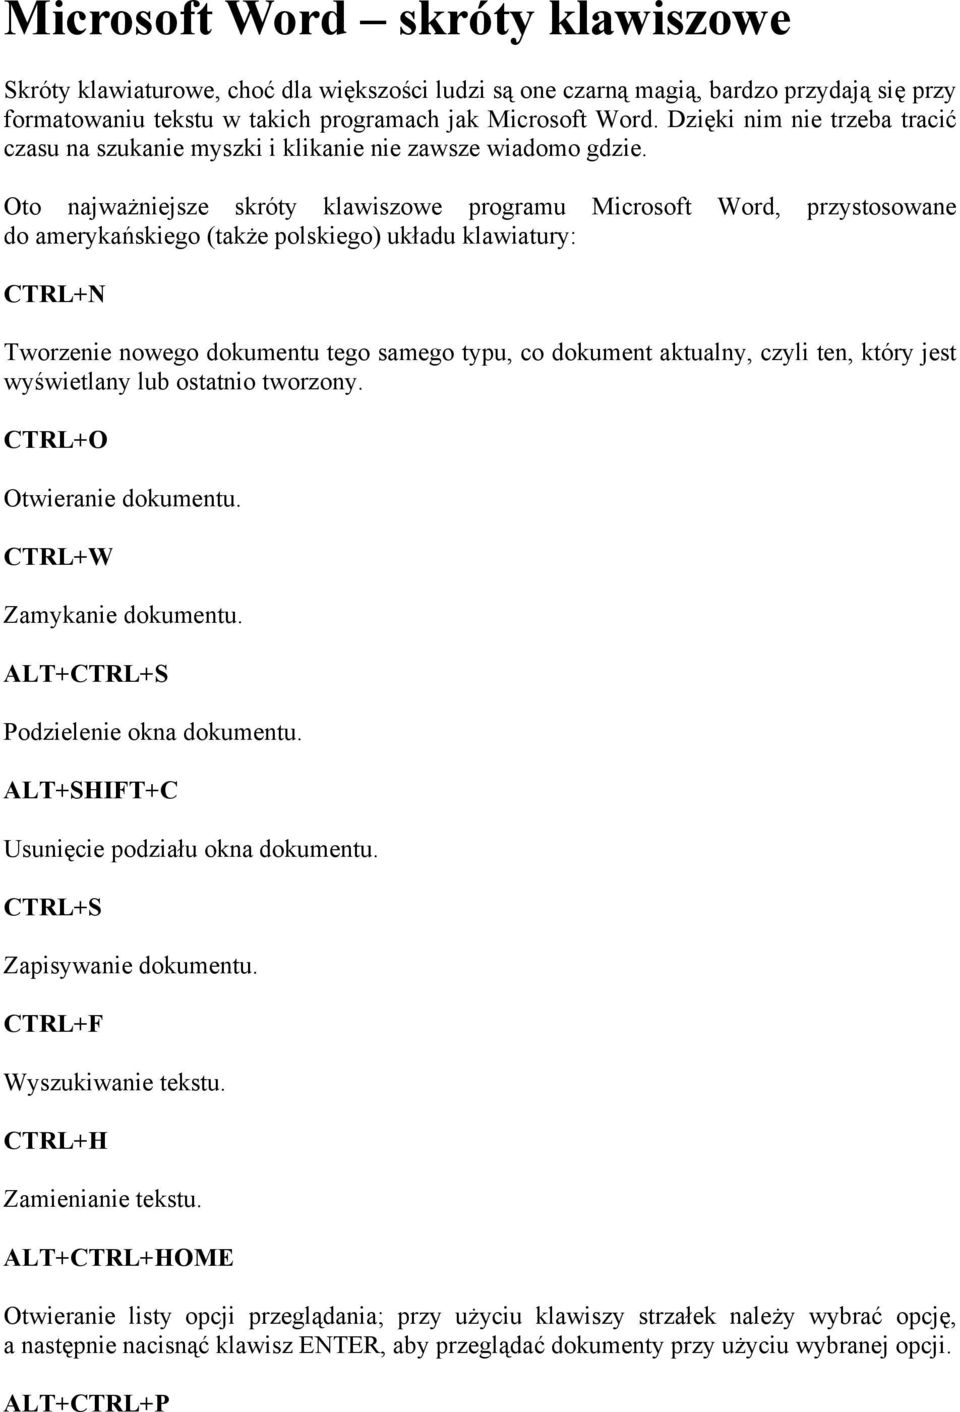 Oto najważniejsze skróty klawiszowe programu Microsoft Word, przystosowane do amerykańskiego (także polskiego) układu klawiatury: CTRL+N Tworzenie nowego dokumentu tego samego typu, co dokument